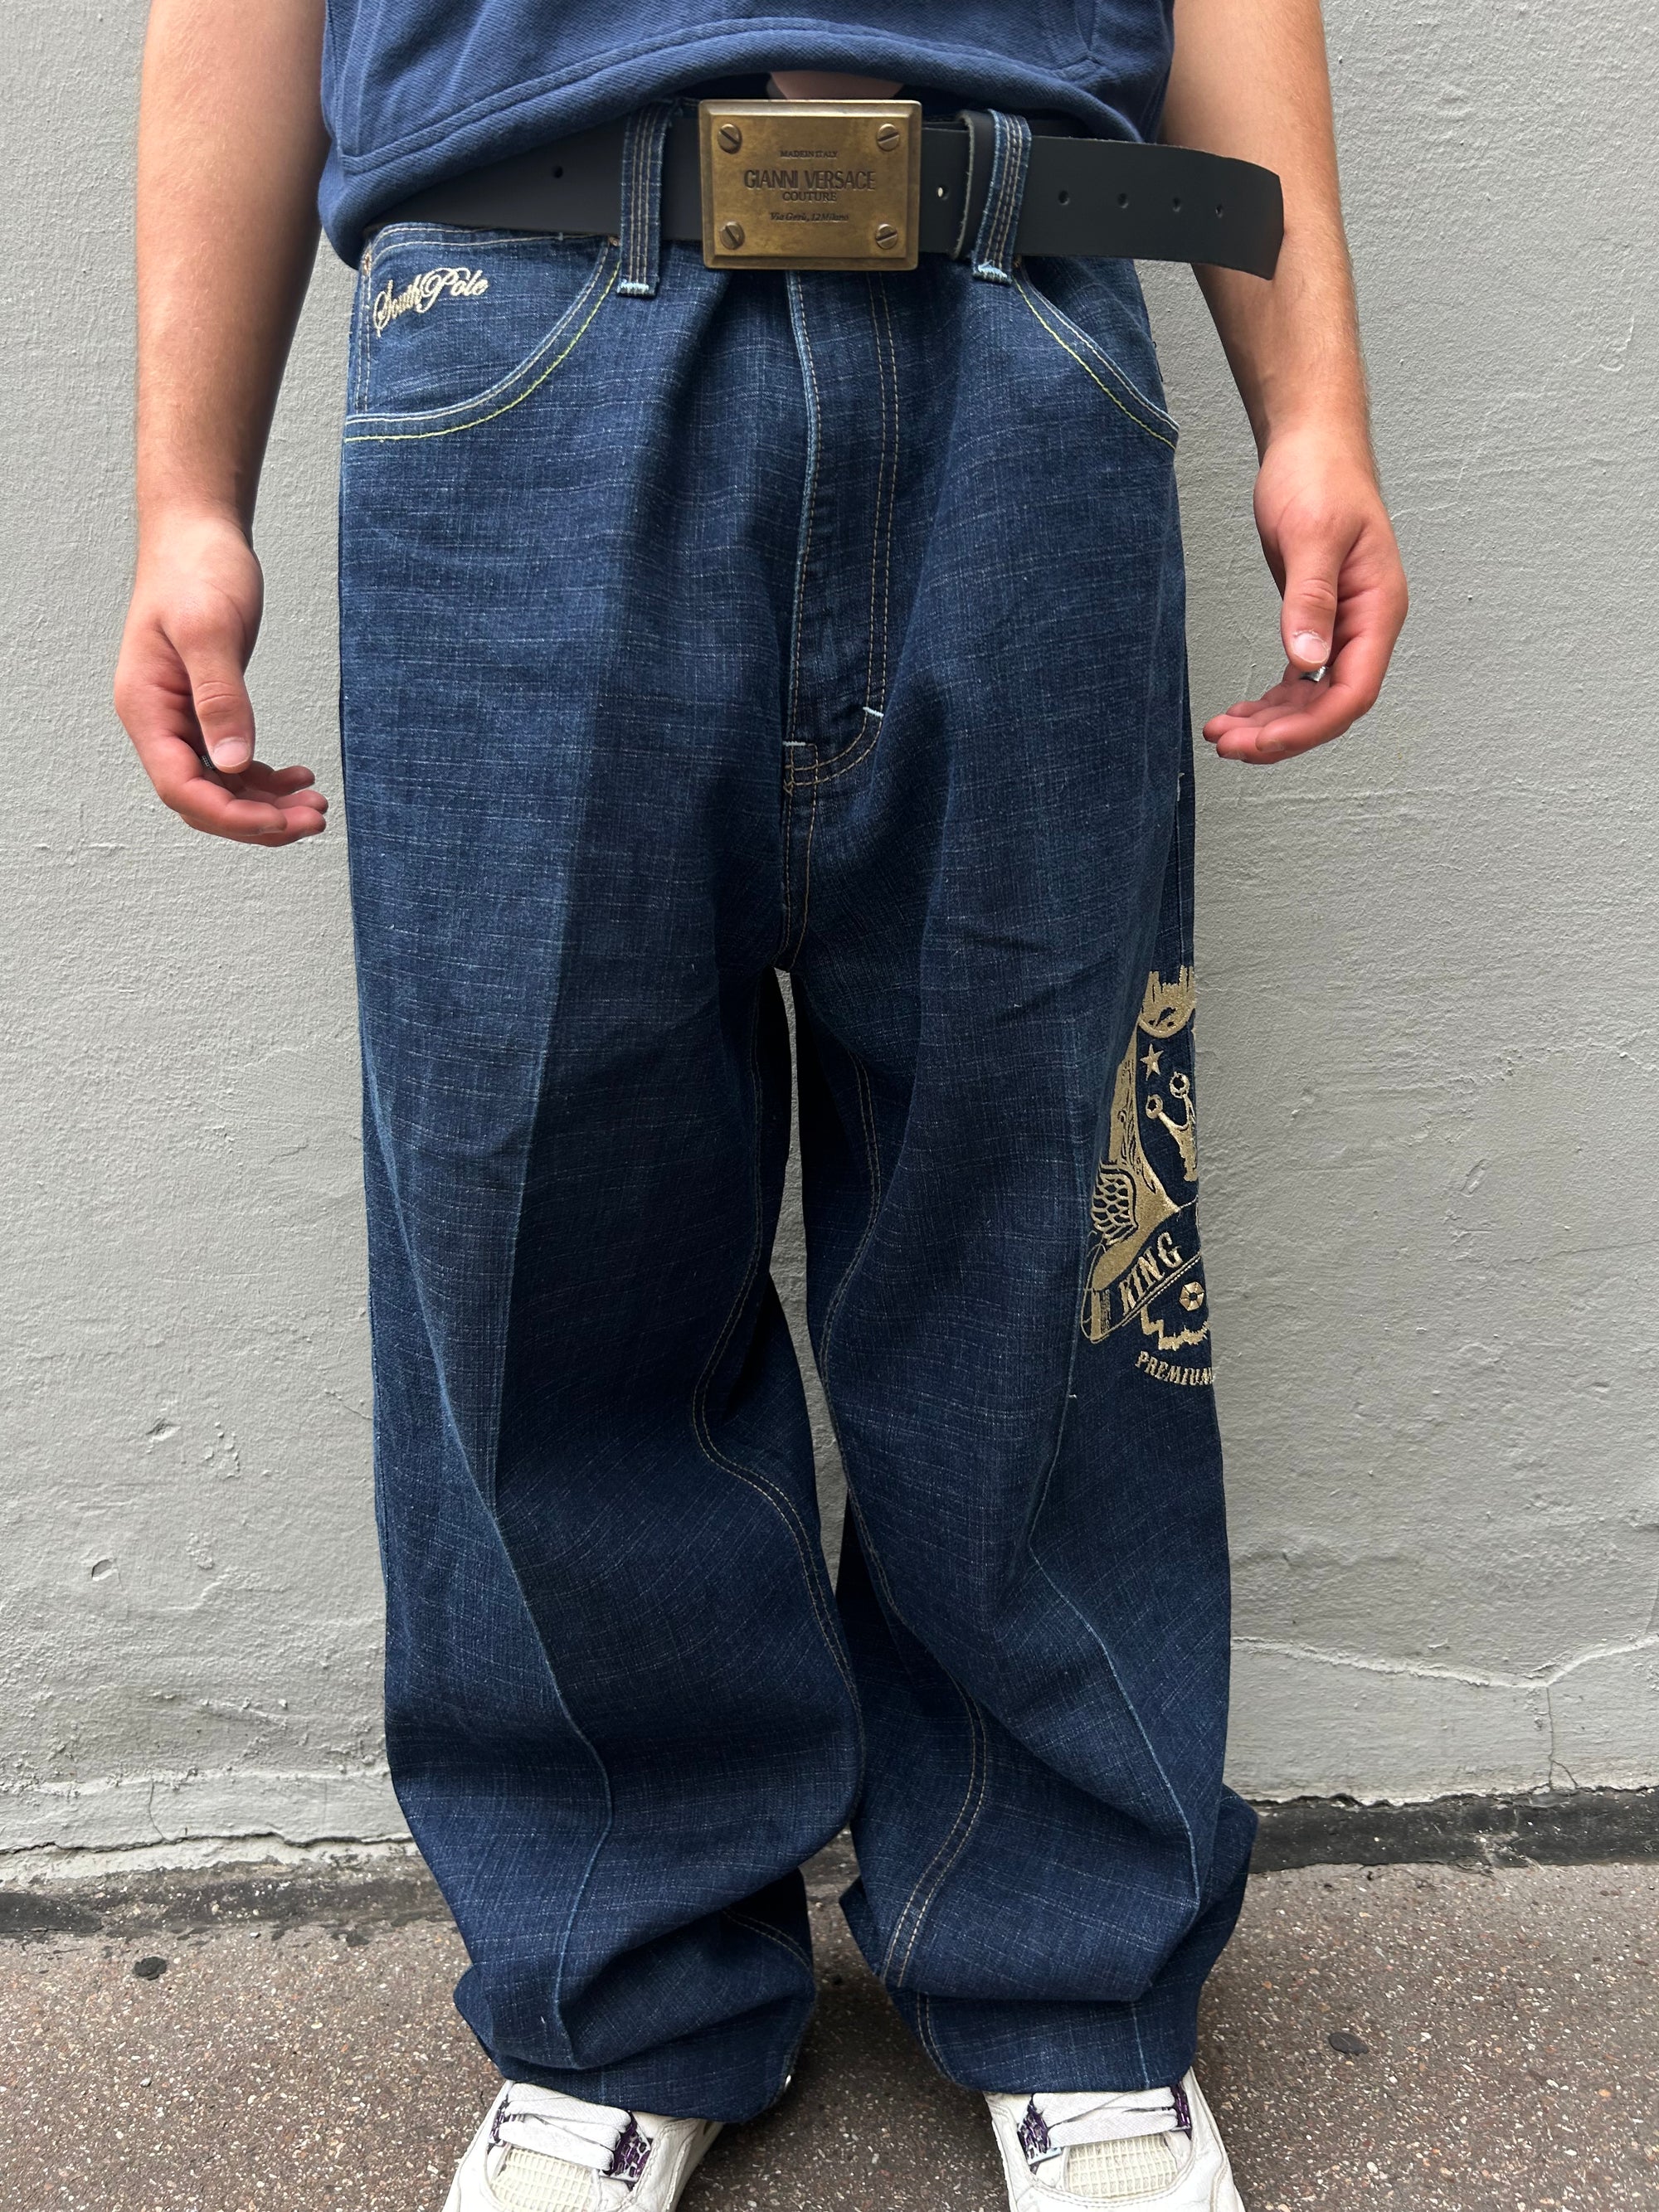 Zu sehen ist eine dunkelblaue baggy Jeans mit Gold Print von soutpole in L